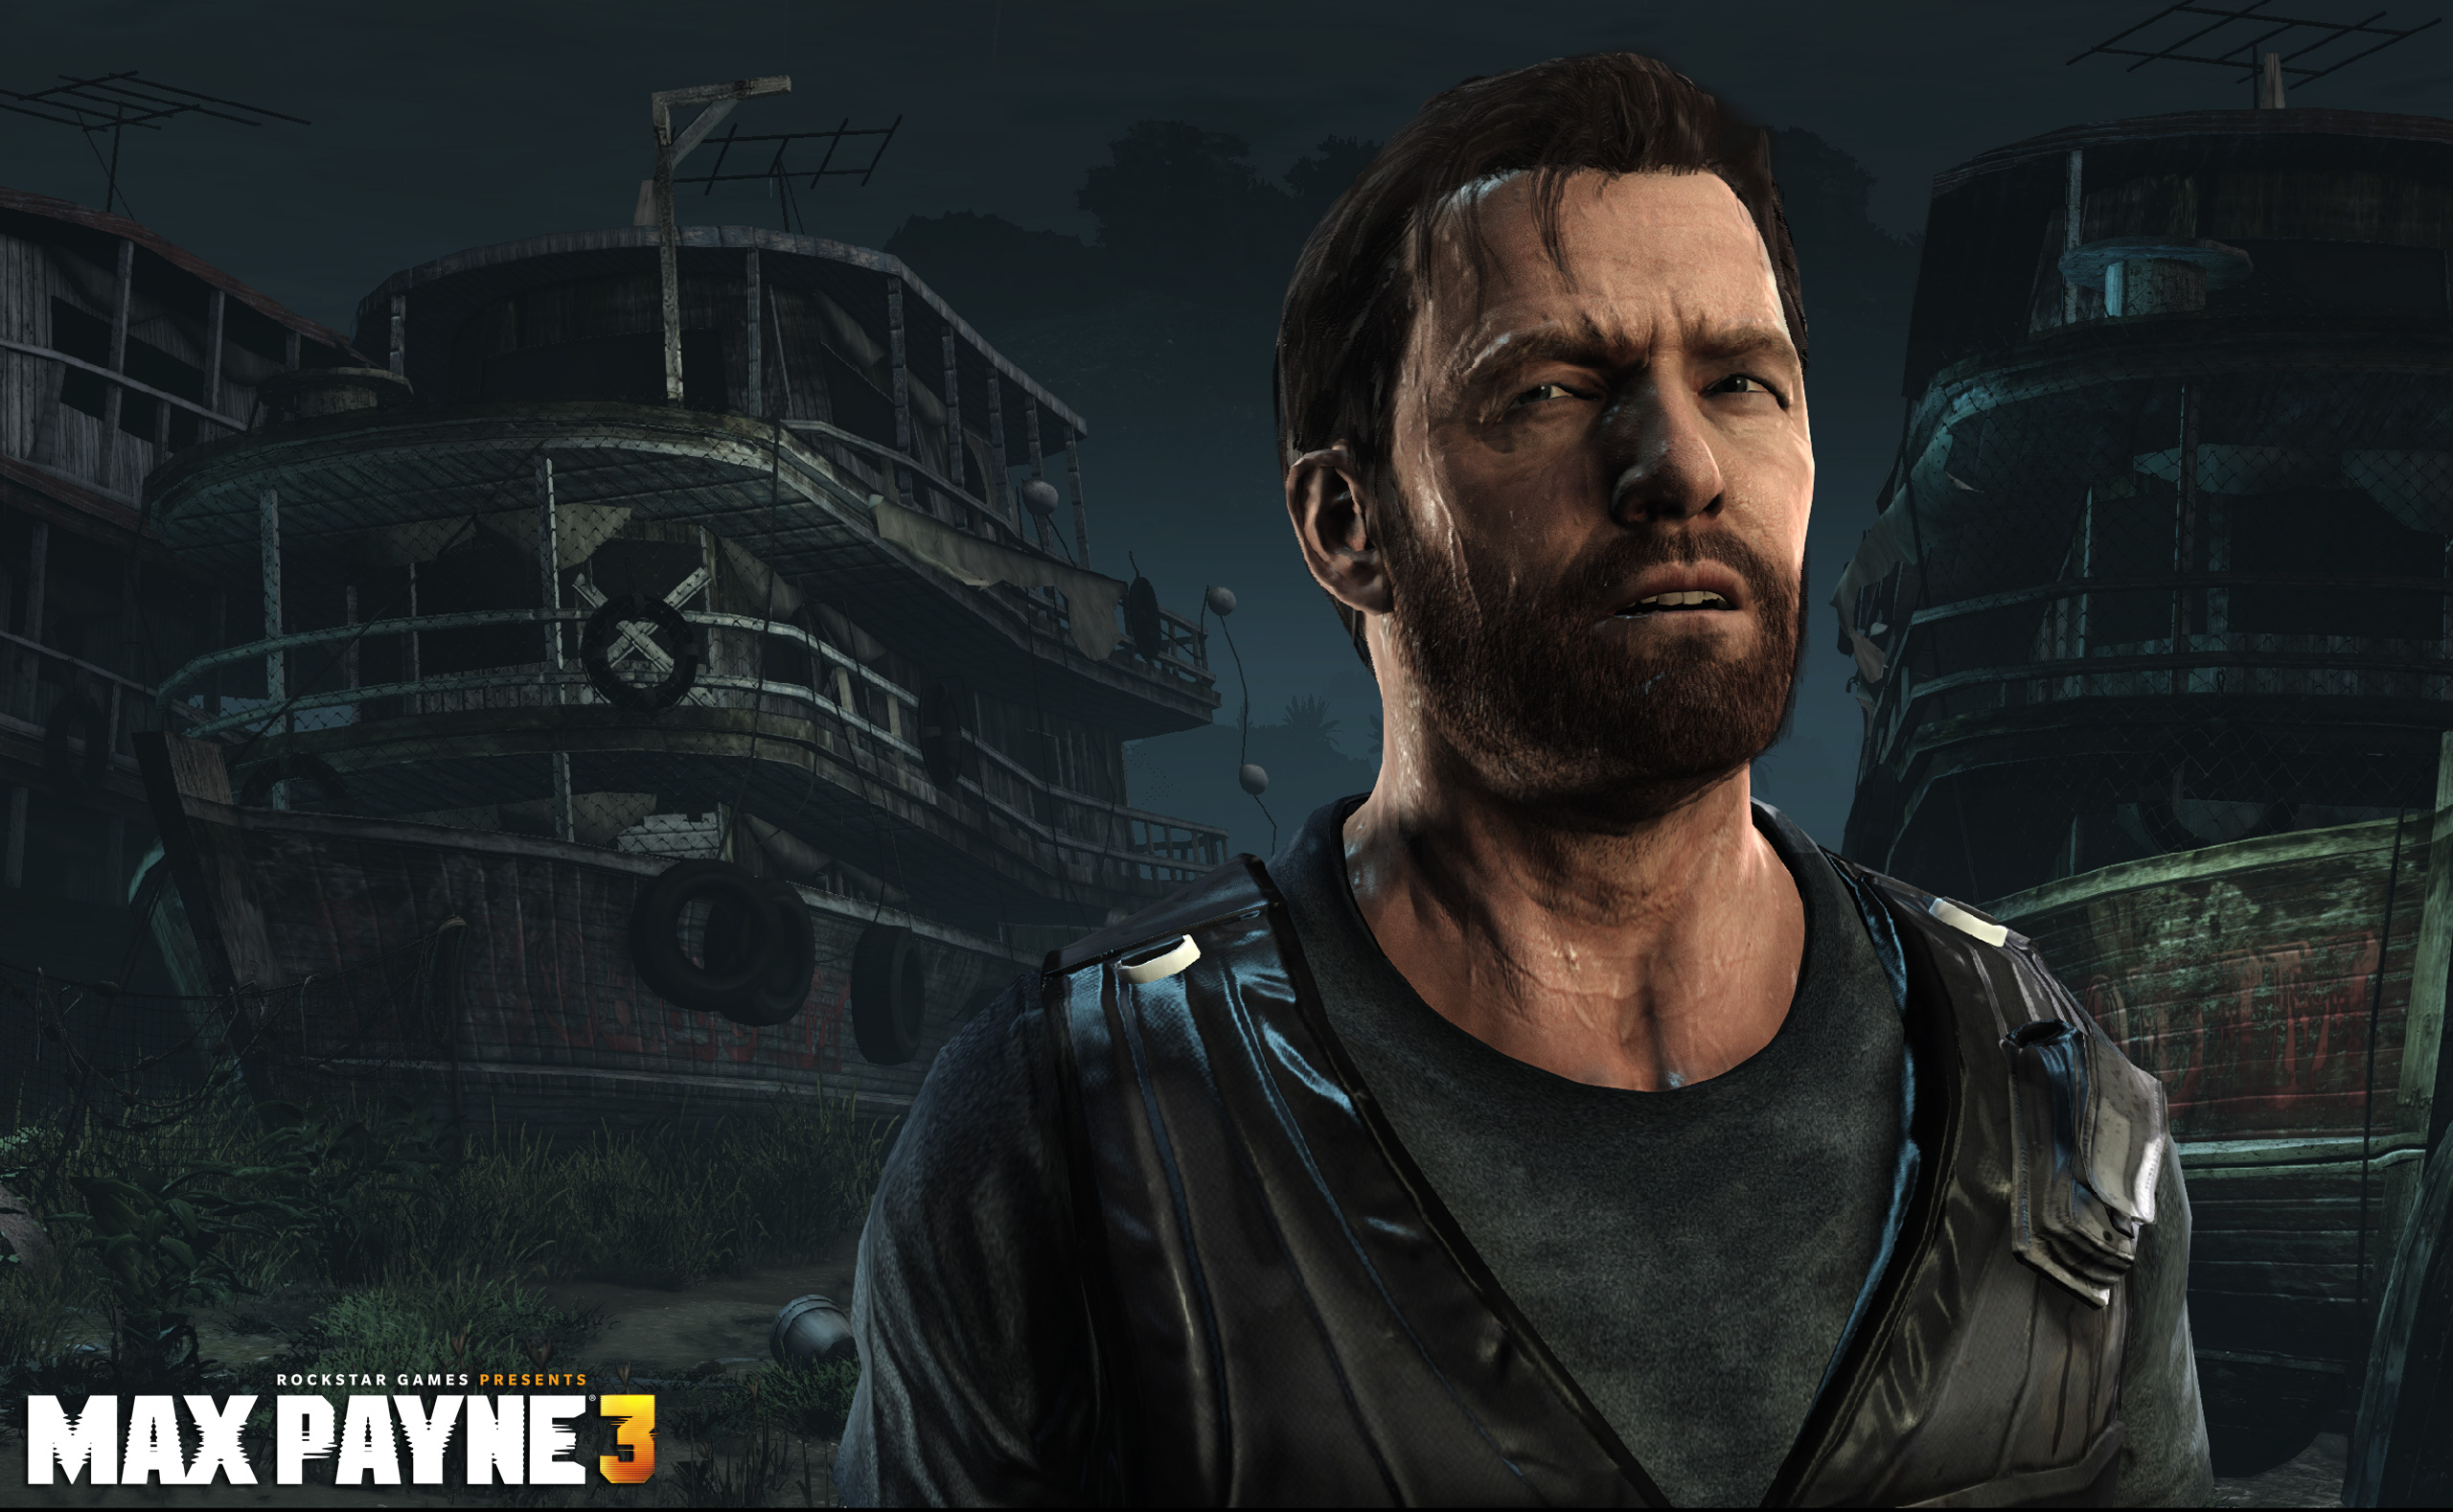 Max Payne 3 Complete Edition Versão Pc Envio Digital